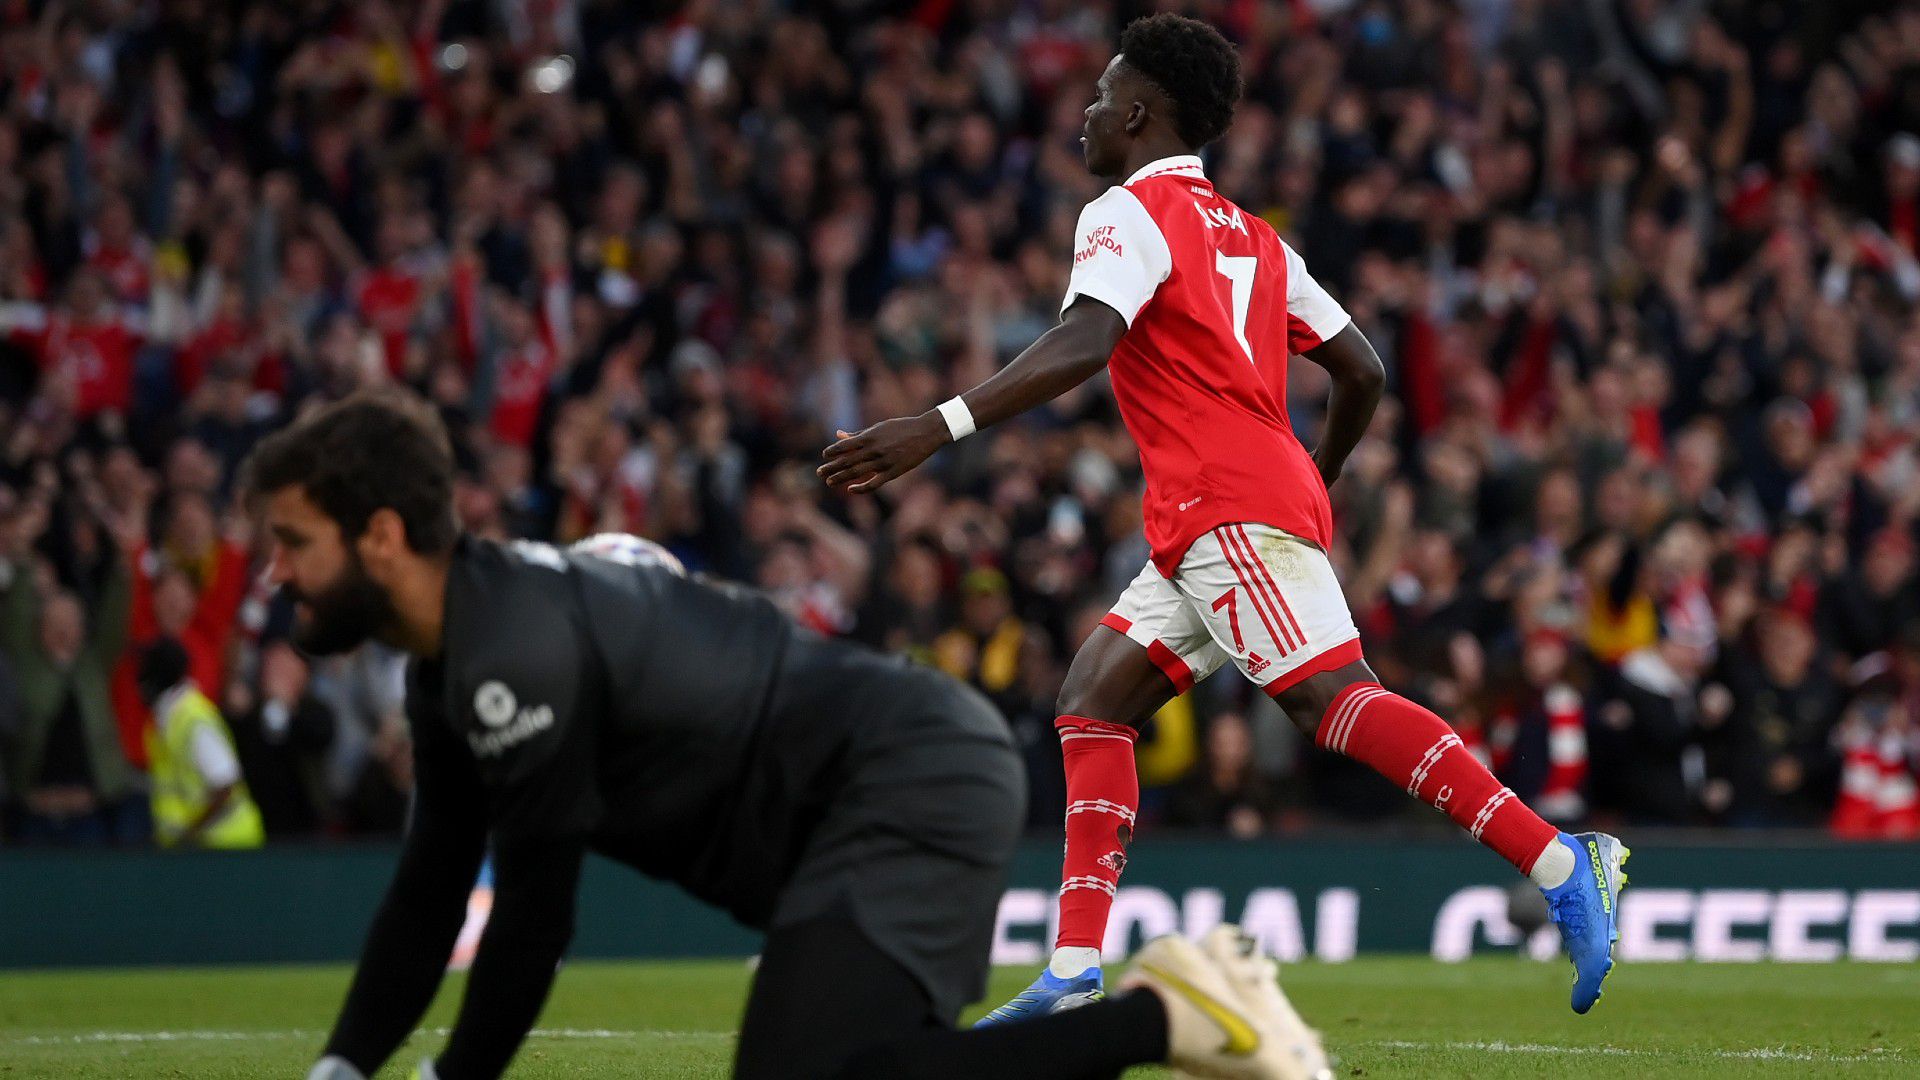 Bukayo Saka volt a Liverpool elleni rangadó hőse, az Arsenal támadója duplázott a rangadón, második góljával a tabella élére lőtte csapatát. Fotó: Getty